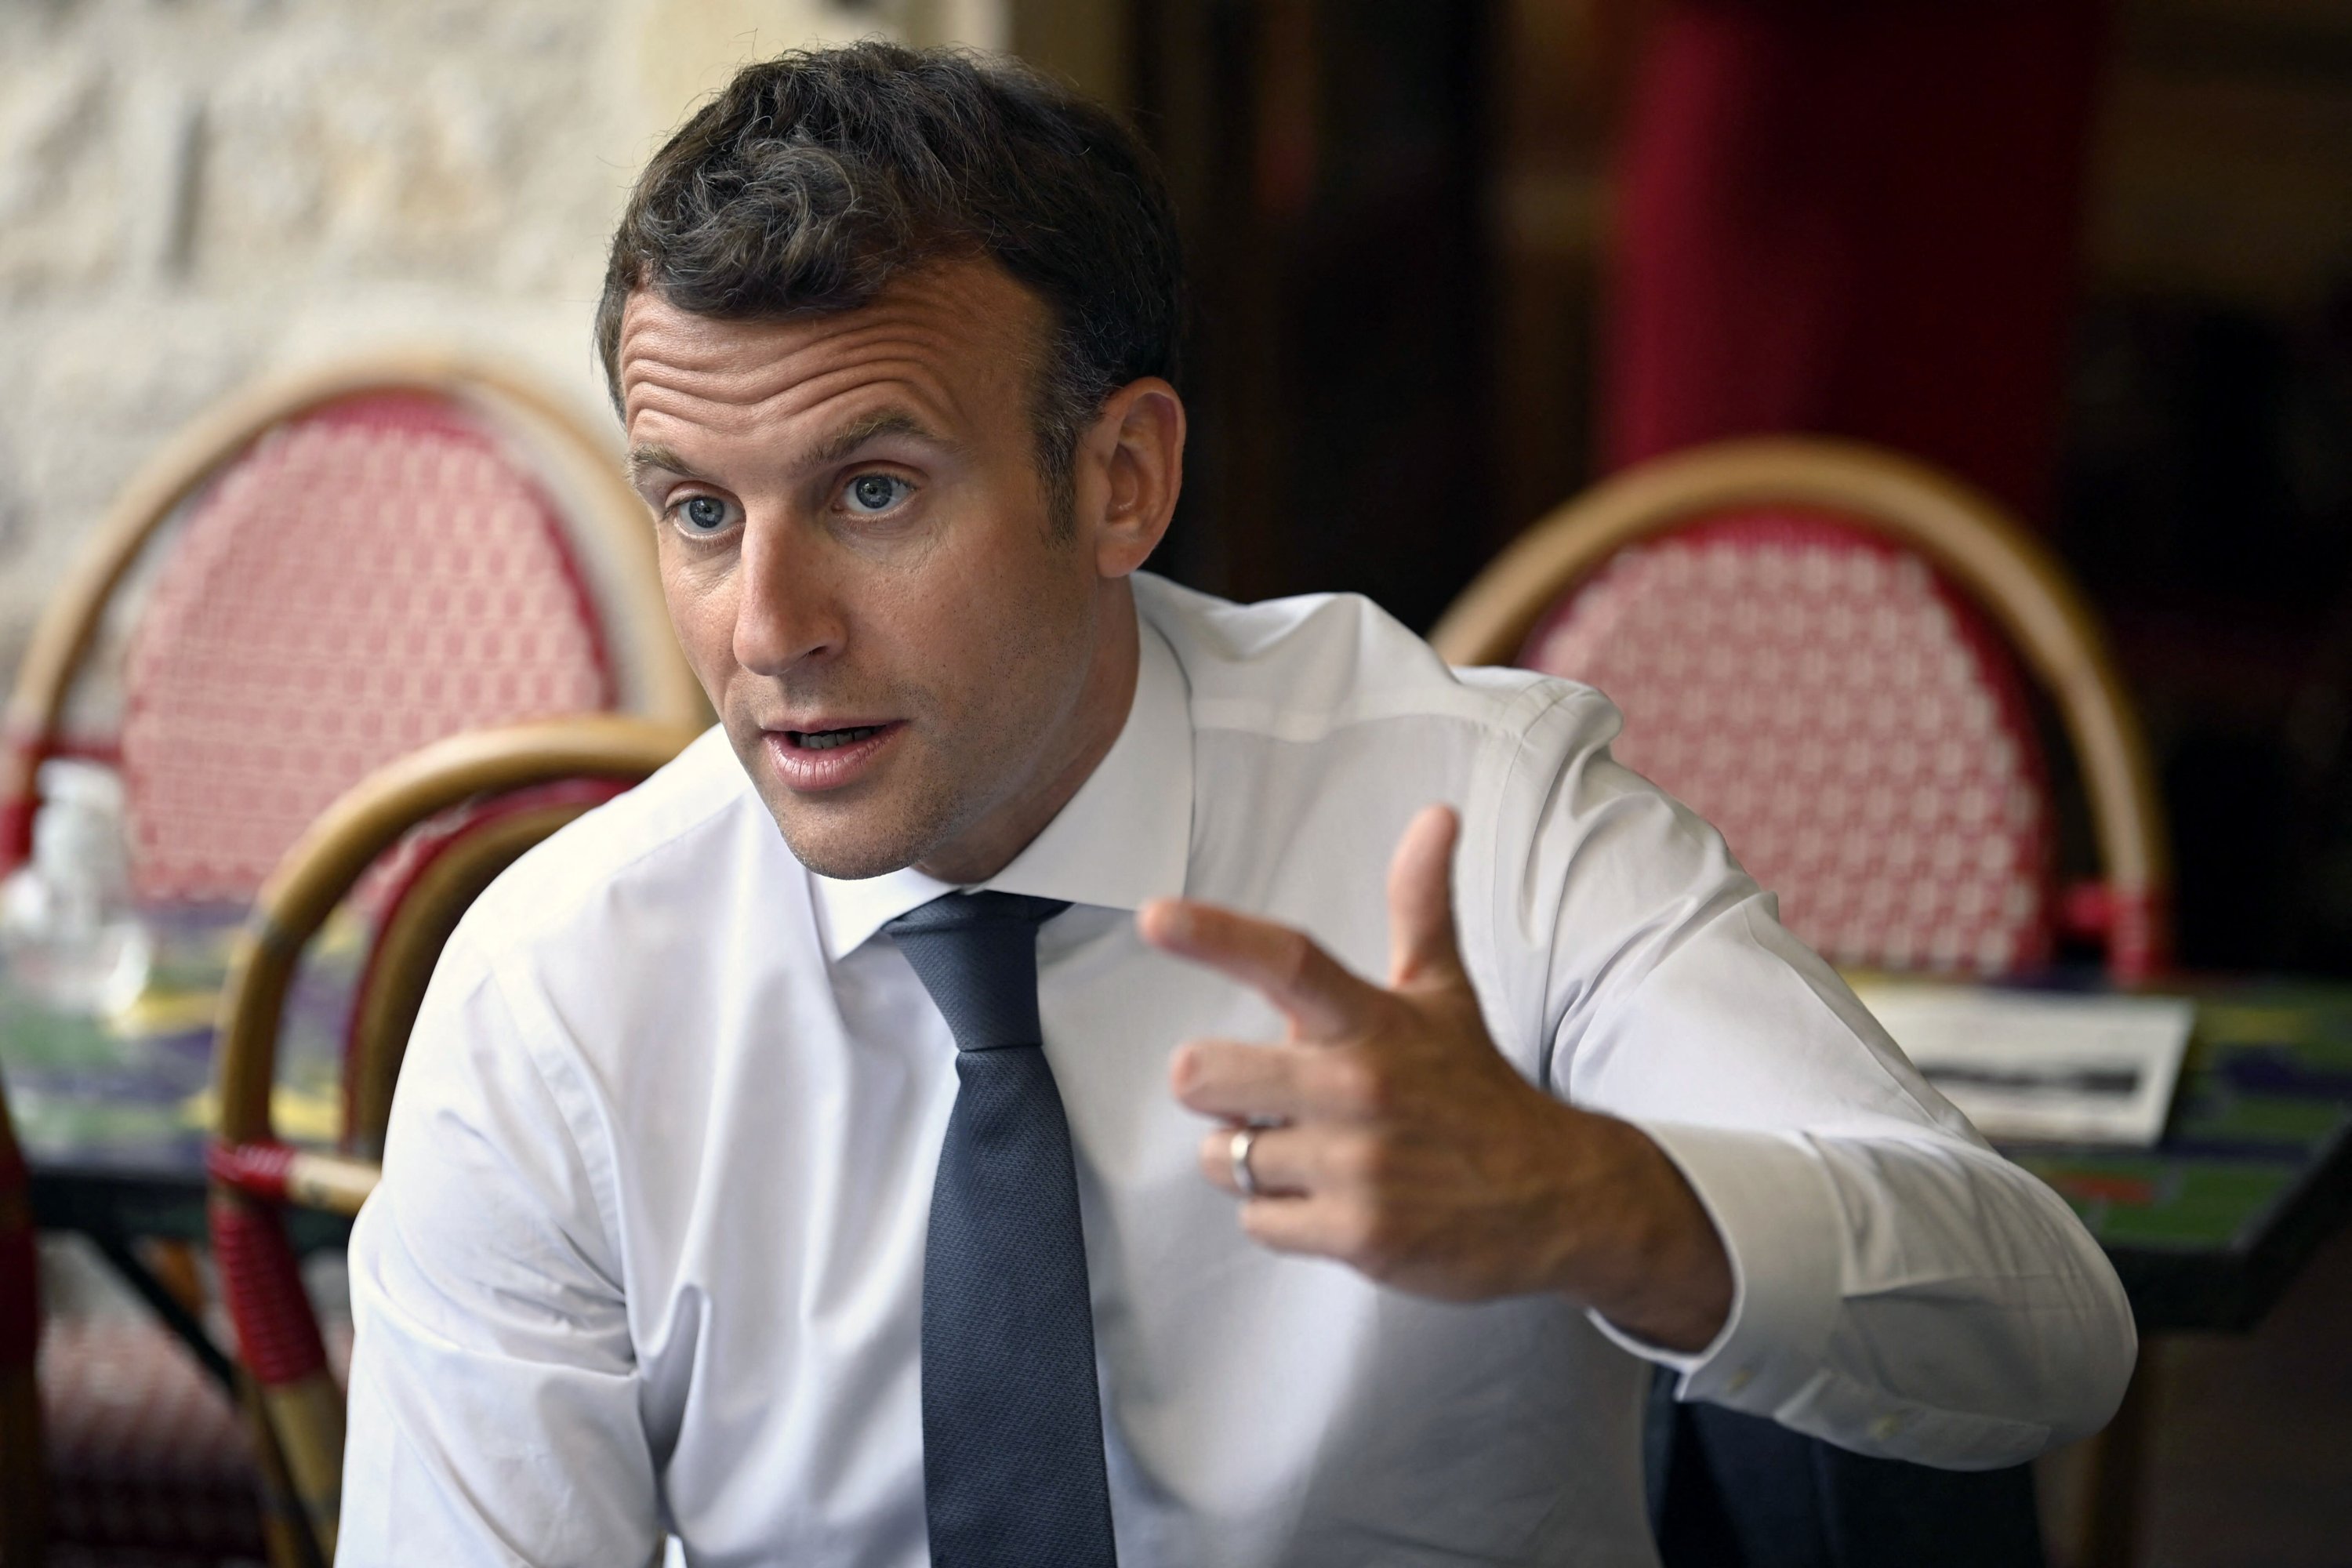 Macron denounces 'violence' in post-face-slap interview | Daily Sabah